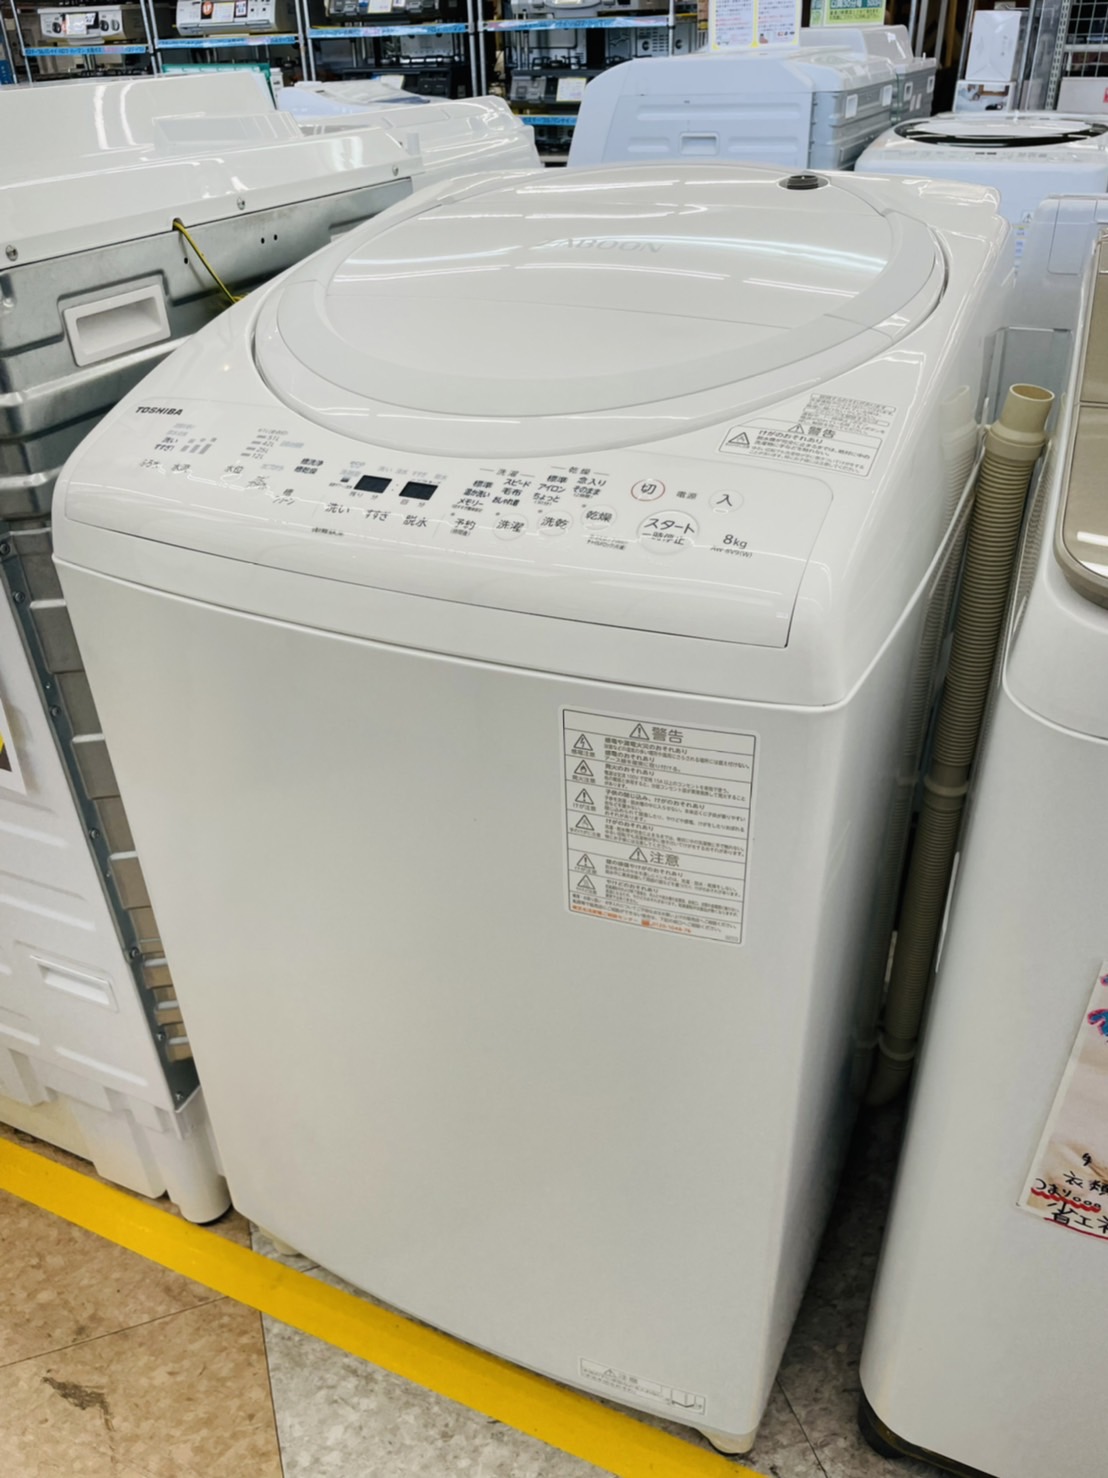 【TOUSHIBA(東芝) / ZABOON(ザブーン) / 8.0/4.5kg乾燥機付き洗濯機 / AW-8V9 / 2020年】買取させて頂きました！！ - リサイクルマートは現在冷蔵庫の買取、家具の買取強化中です！お気軽にお問い合わせください。